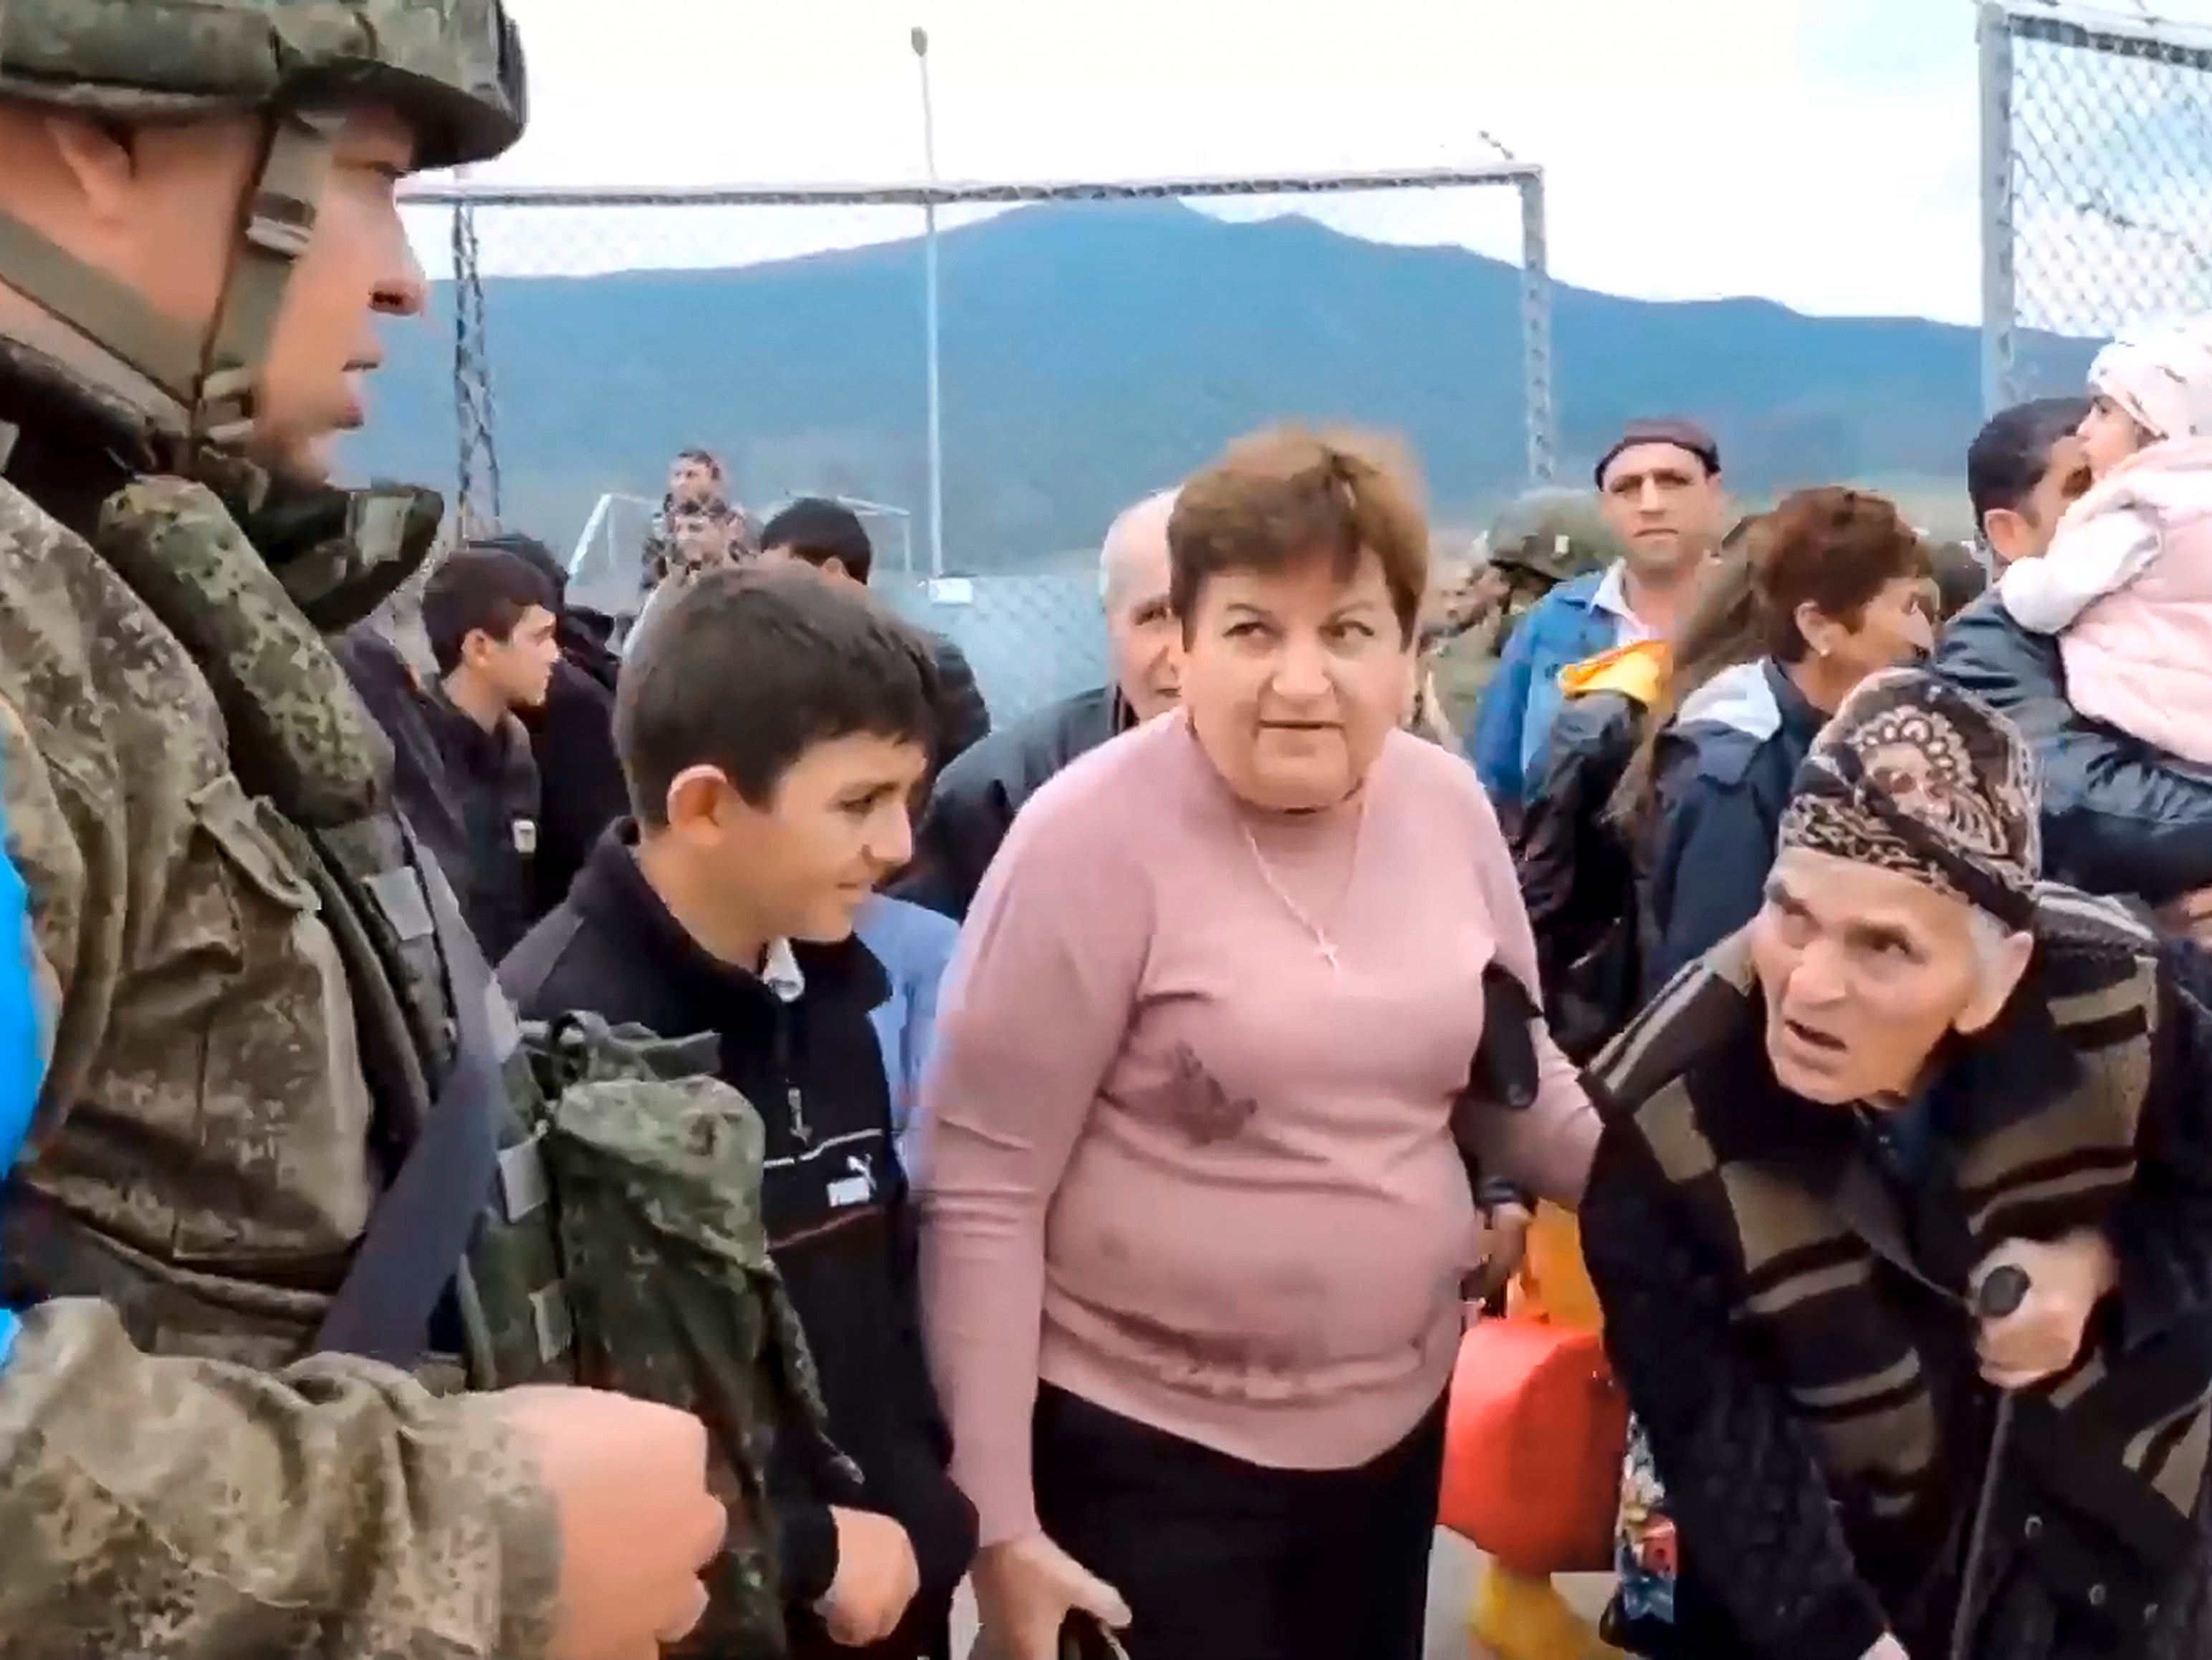 Tensions between Armenia and Azerbaijan lead to humanitarian crisis